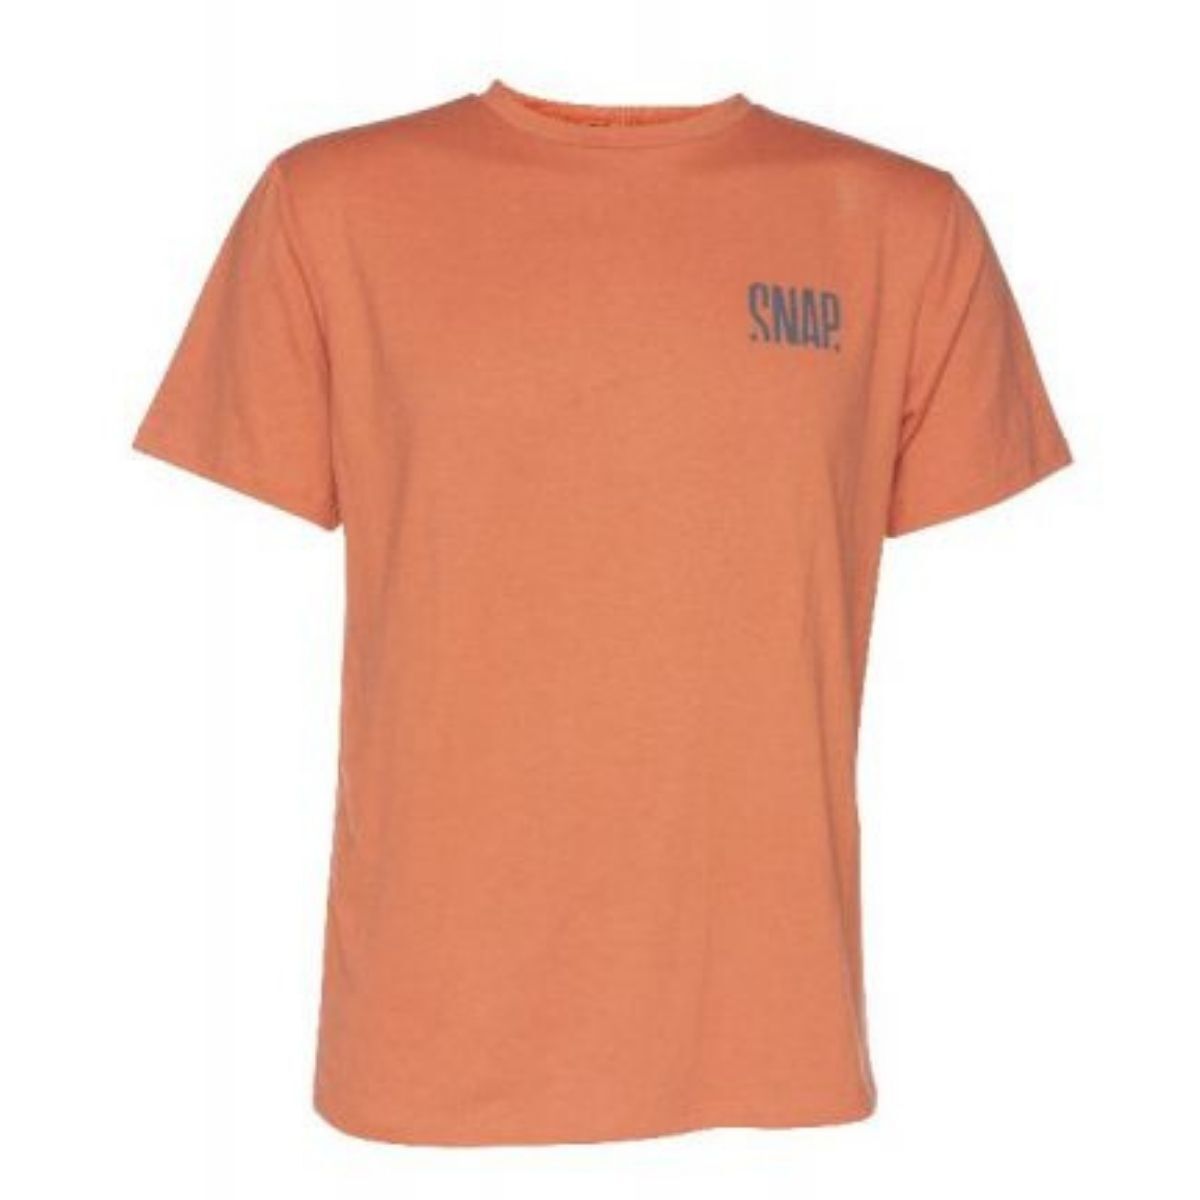 Snap Classic Hemp - T-shirt - Men's